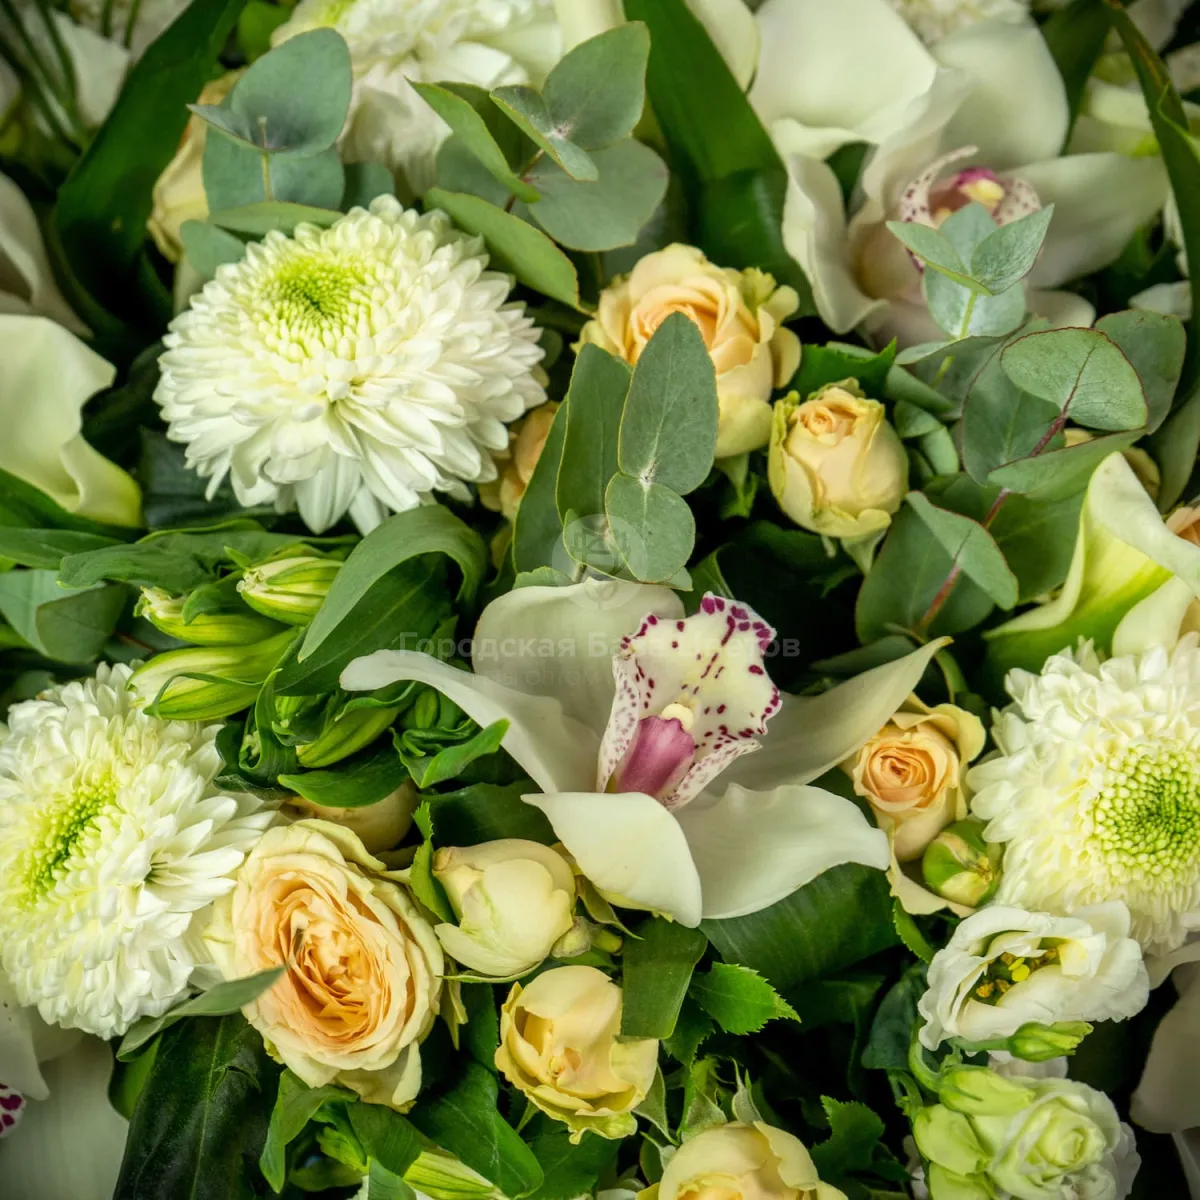 Букет из хризантем, роз и белой орхидеи